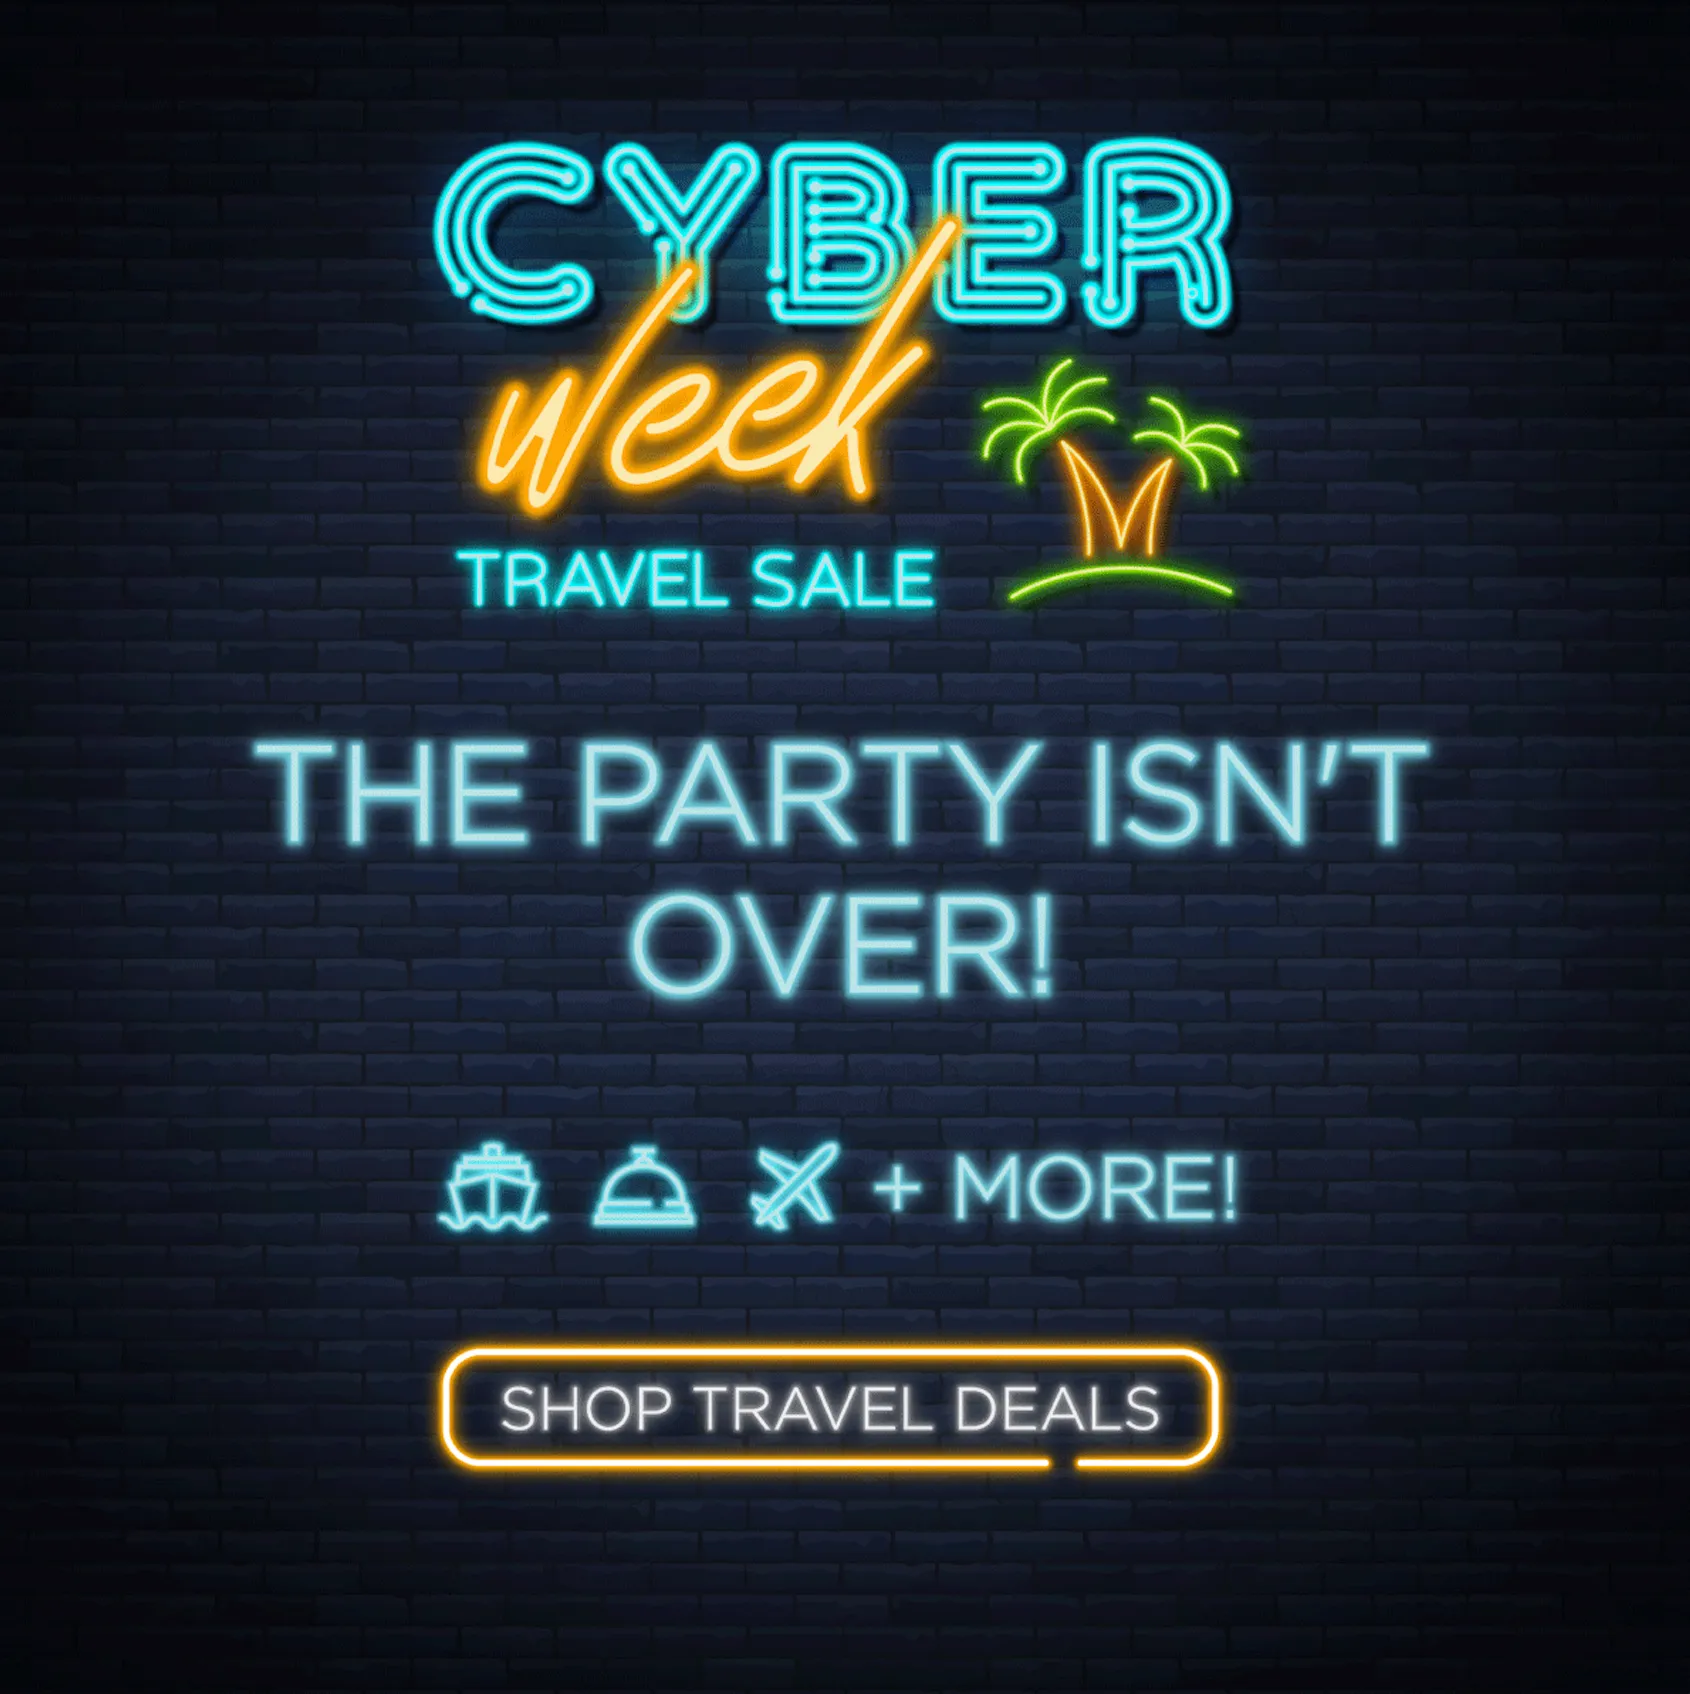 Cyber Week Travel Sale